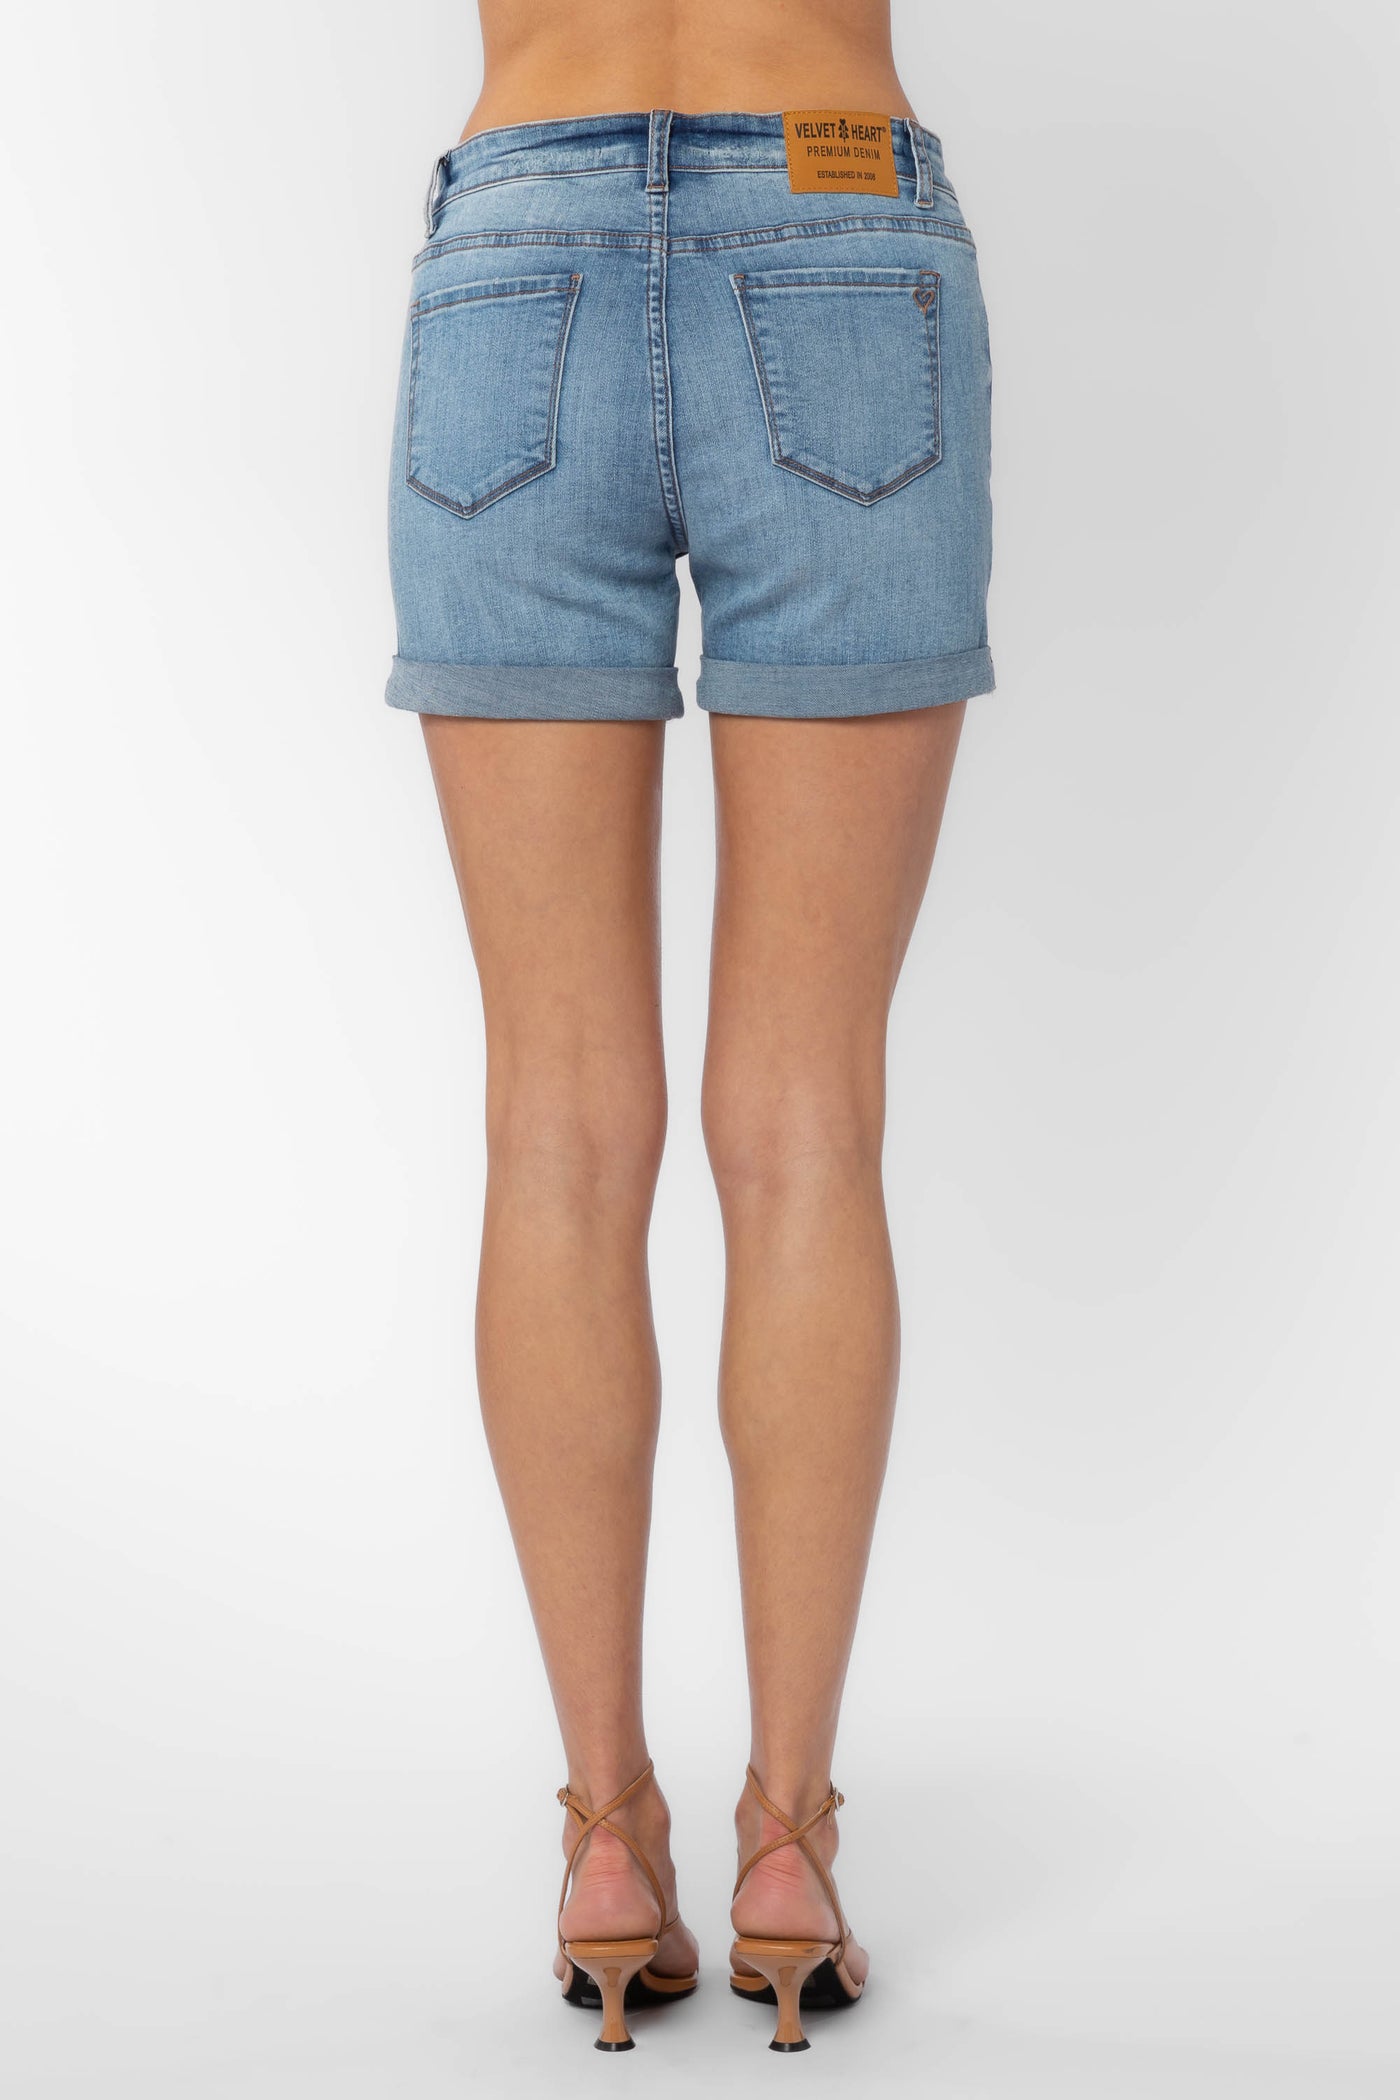 Jenny Blue Shorts - Bottoms - Velvet Heart Clothing